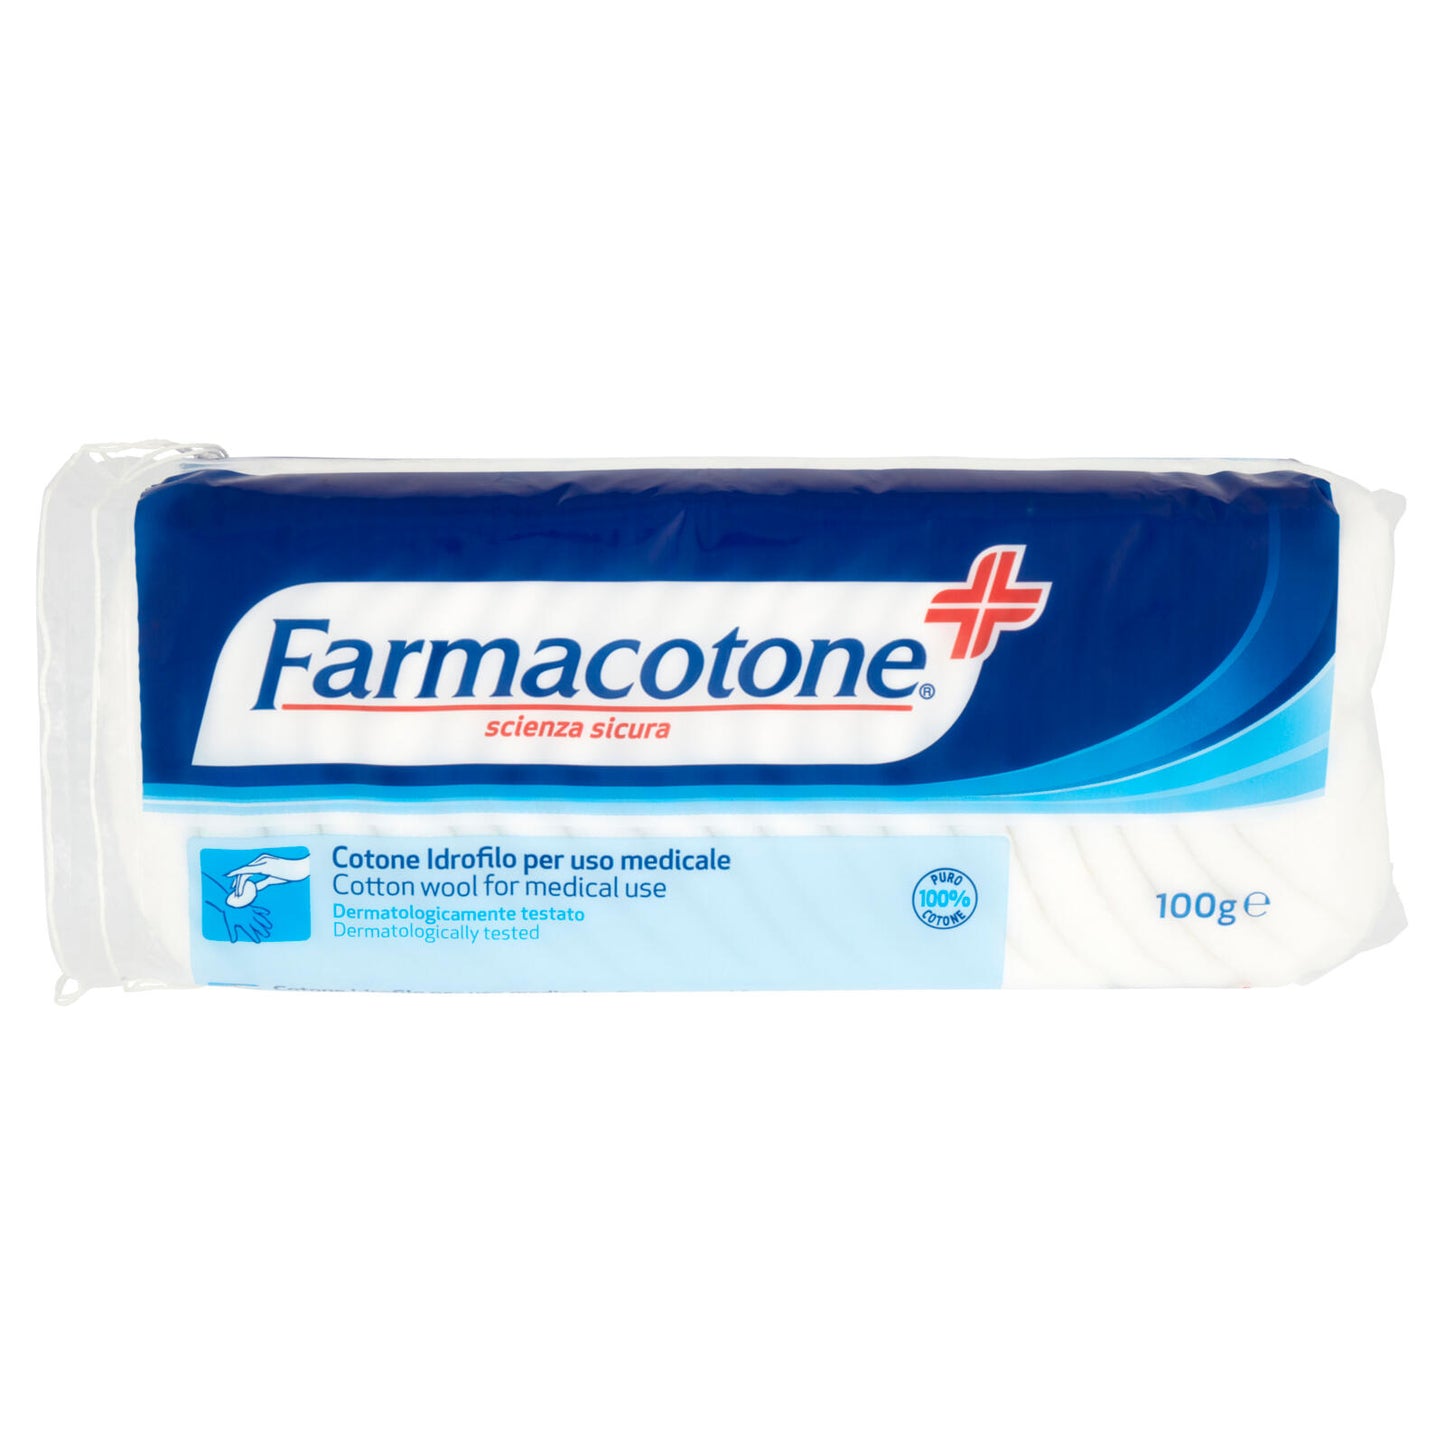 Farmacotone Cotone Idrofilo per uso medicale 100 g